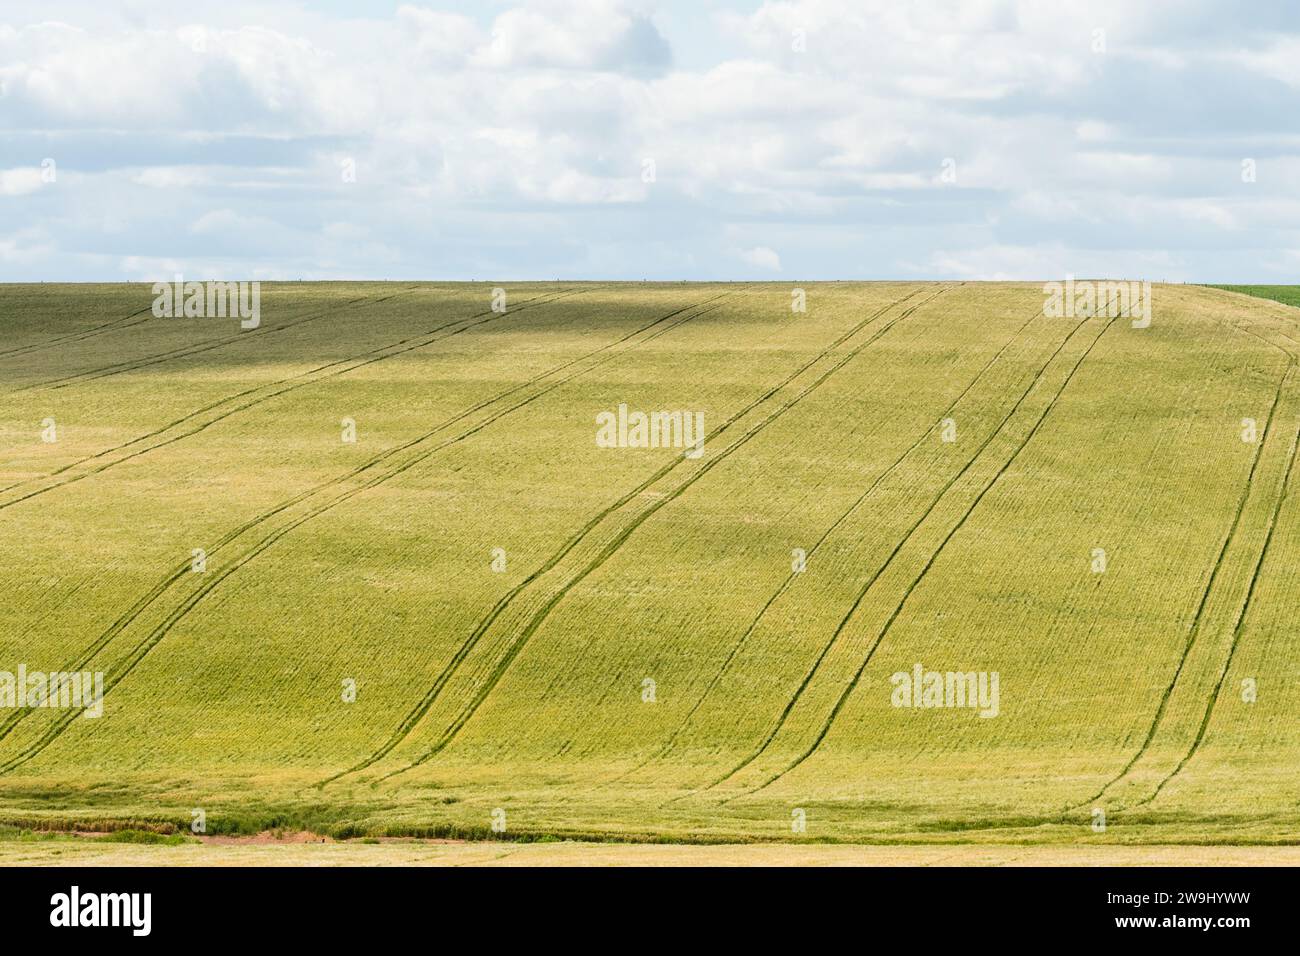 Grüne Feldfrüchte auf einem Hügel mit Streckenlinien, die von Landmaschinen hergestellt werden, Konzept Farmland oder Landwirtschaftslandschaft in Westkap, Südafrika Stockfoto